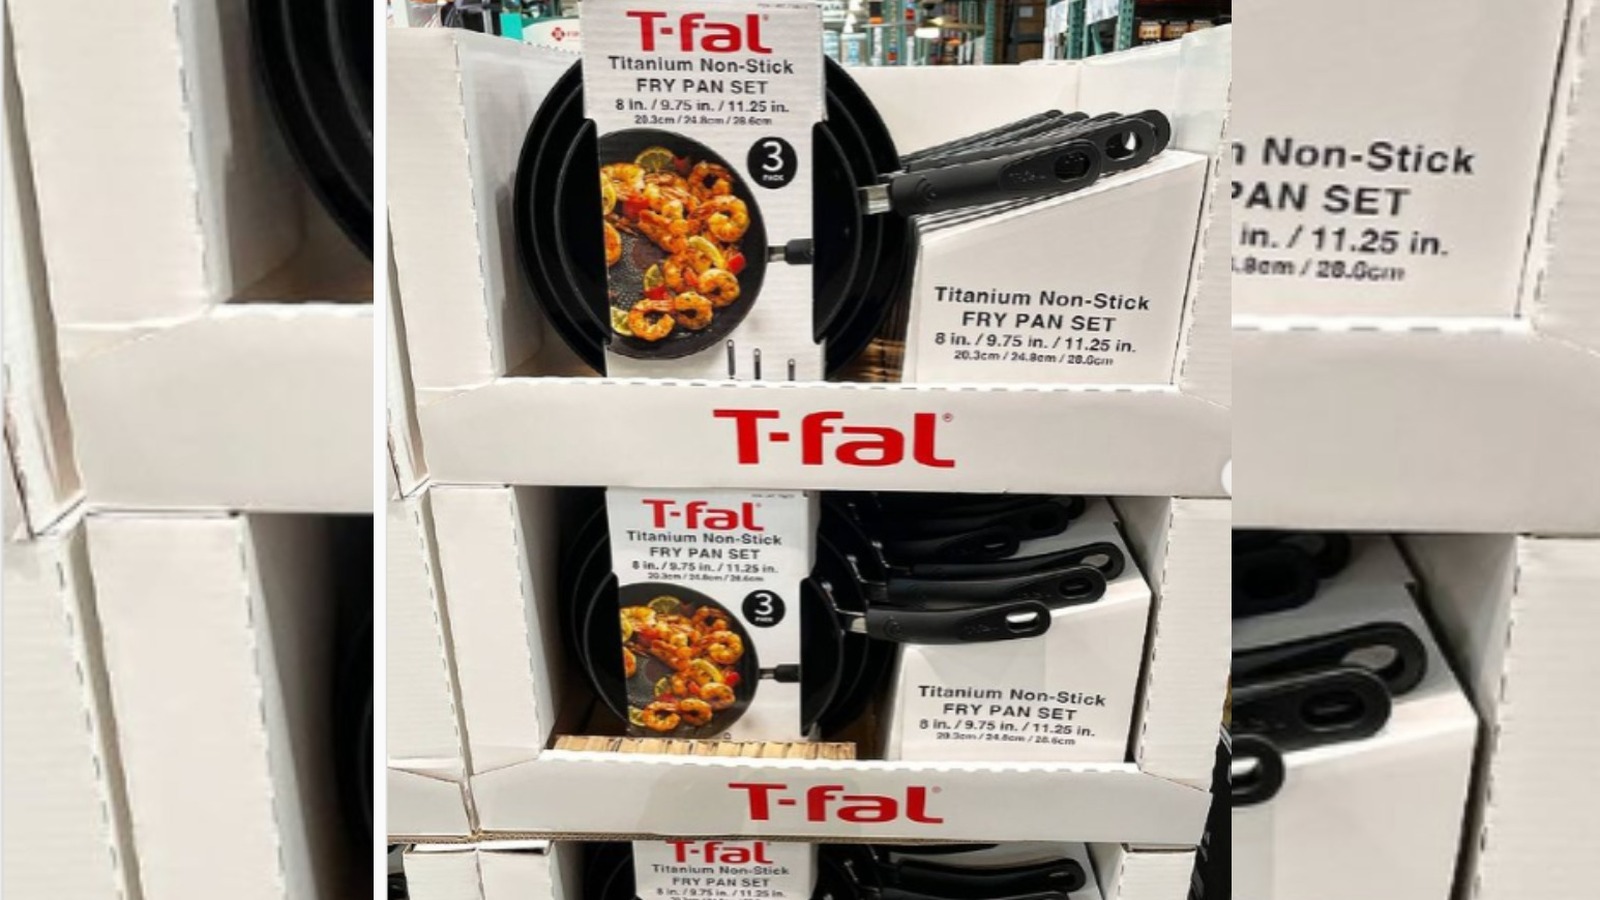 T-fal Titanium Fry Pans